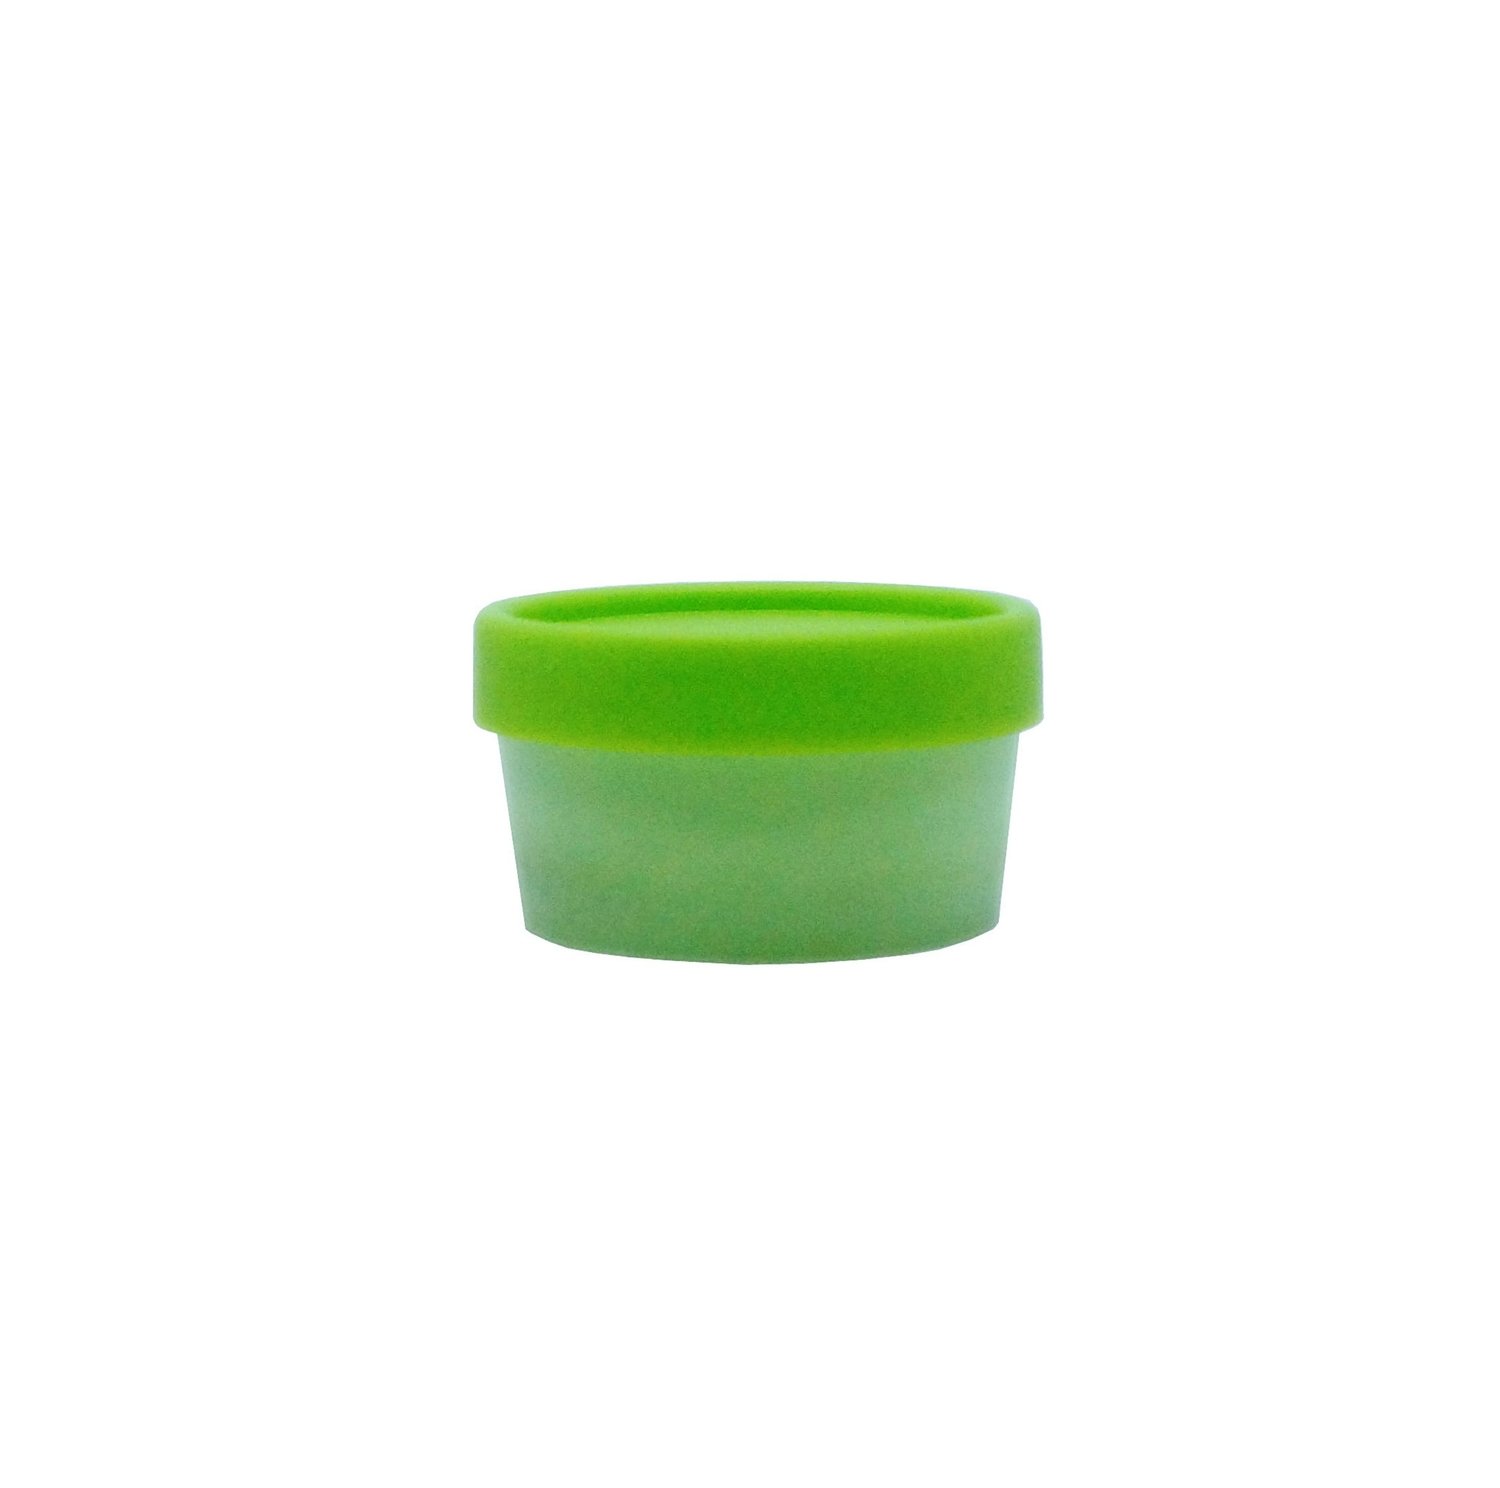 50g, Leaf Green Lush Jar